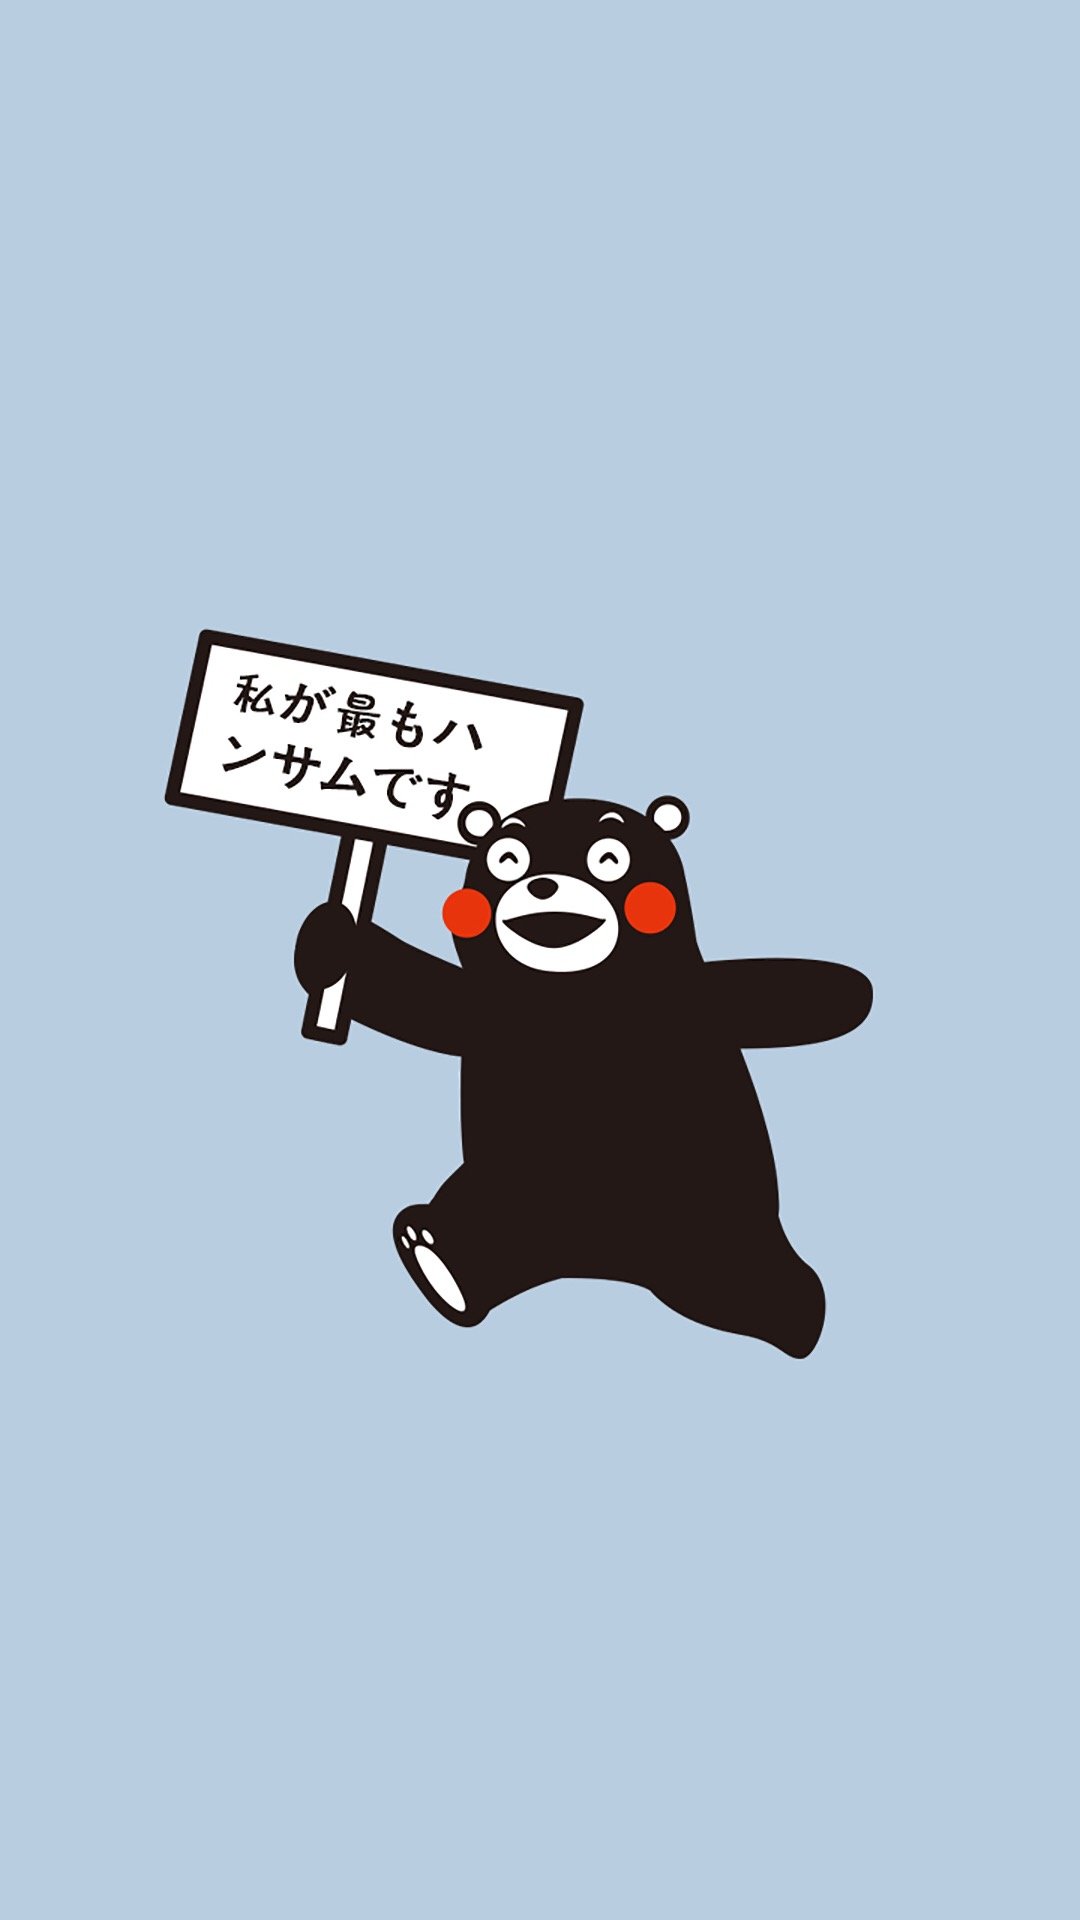 熊本熊壁纸可爱图片